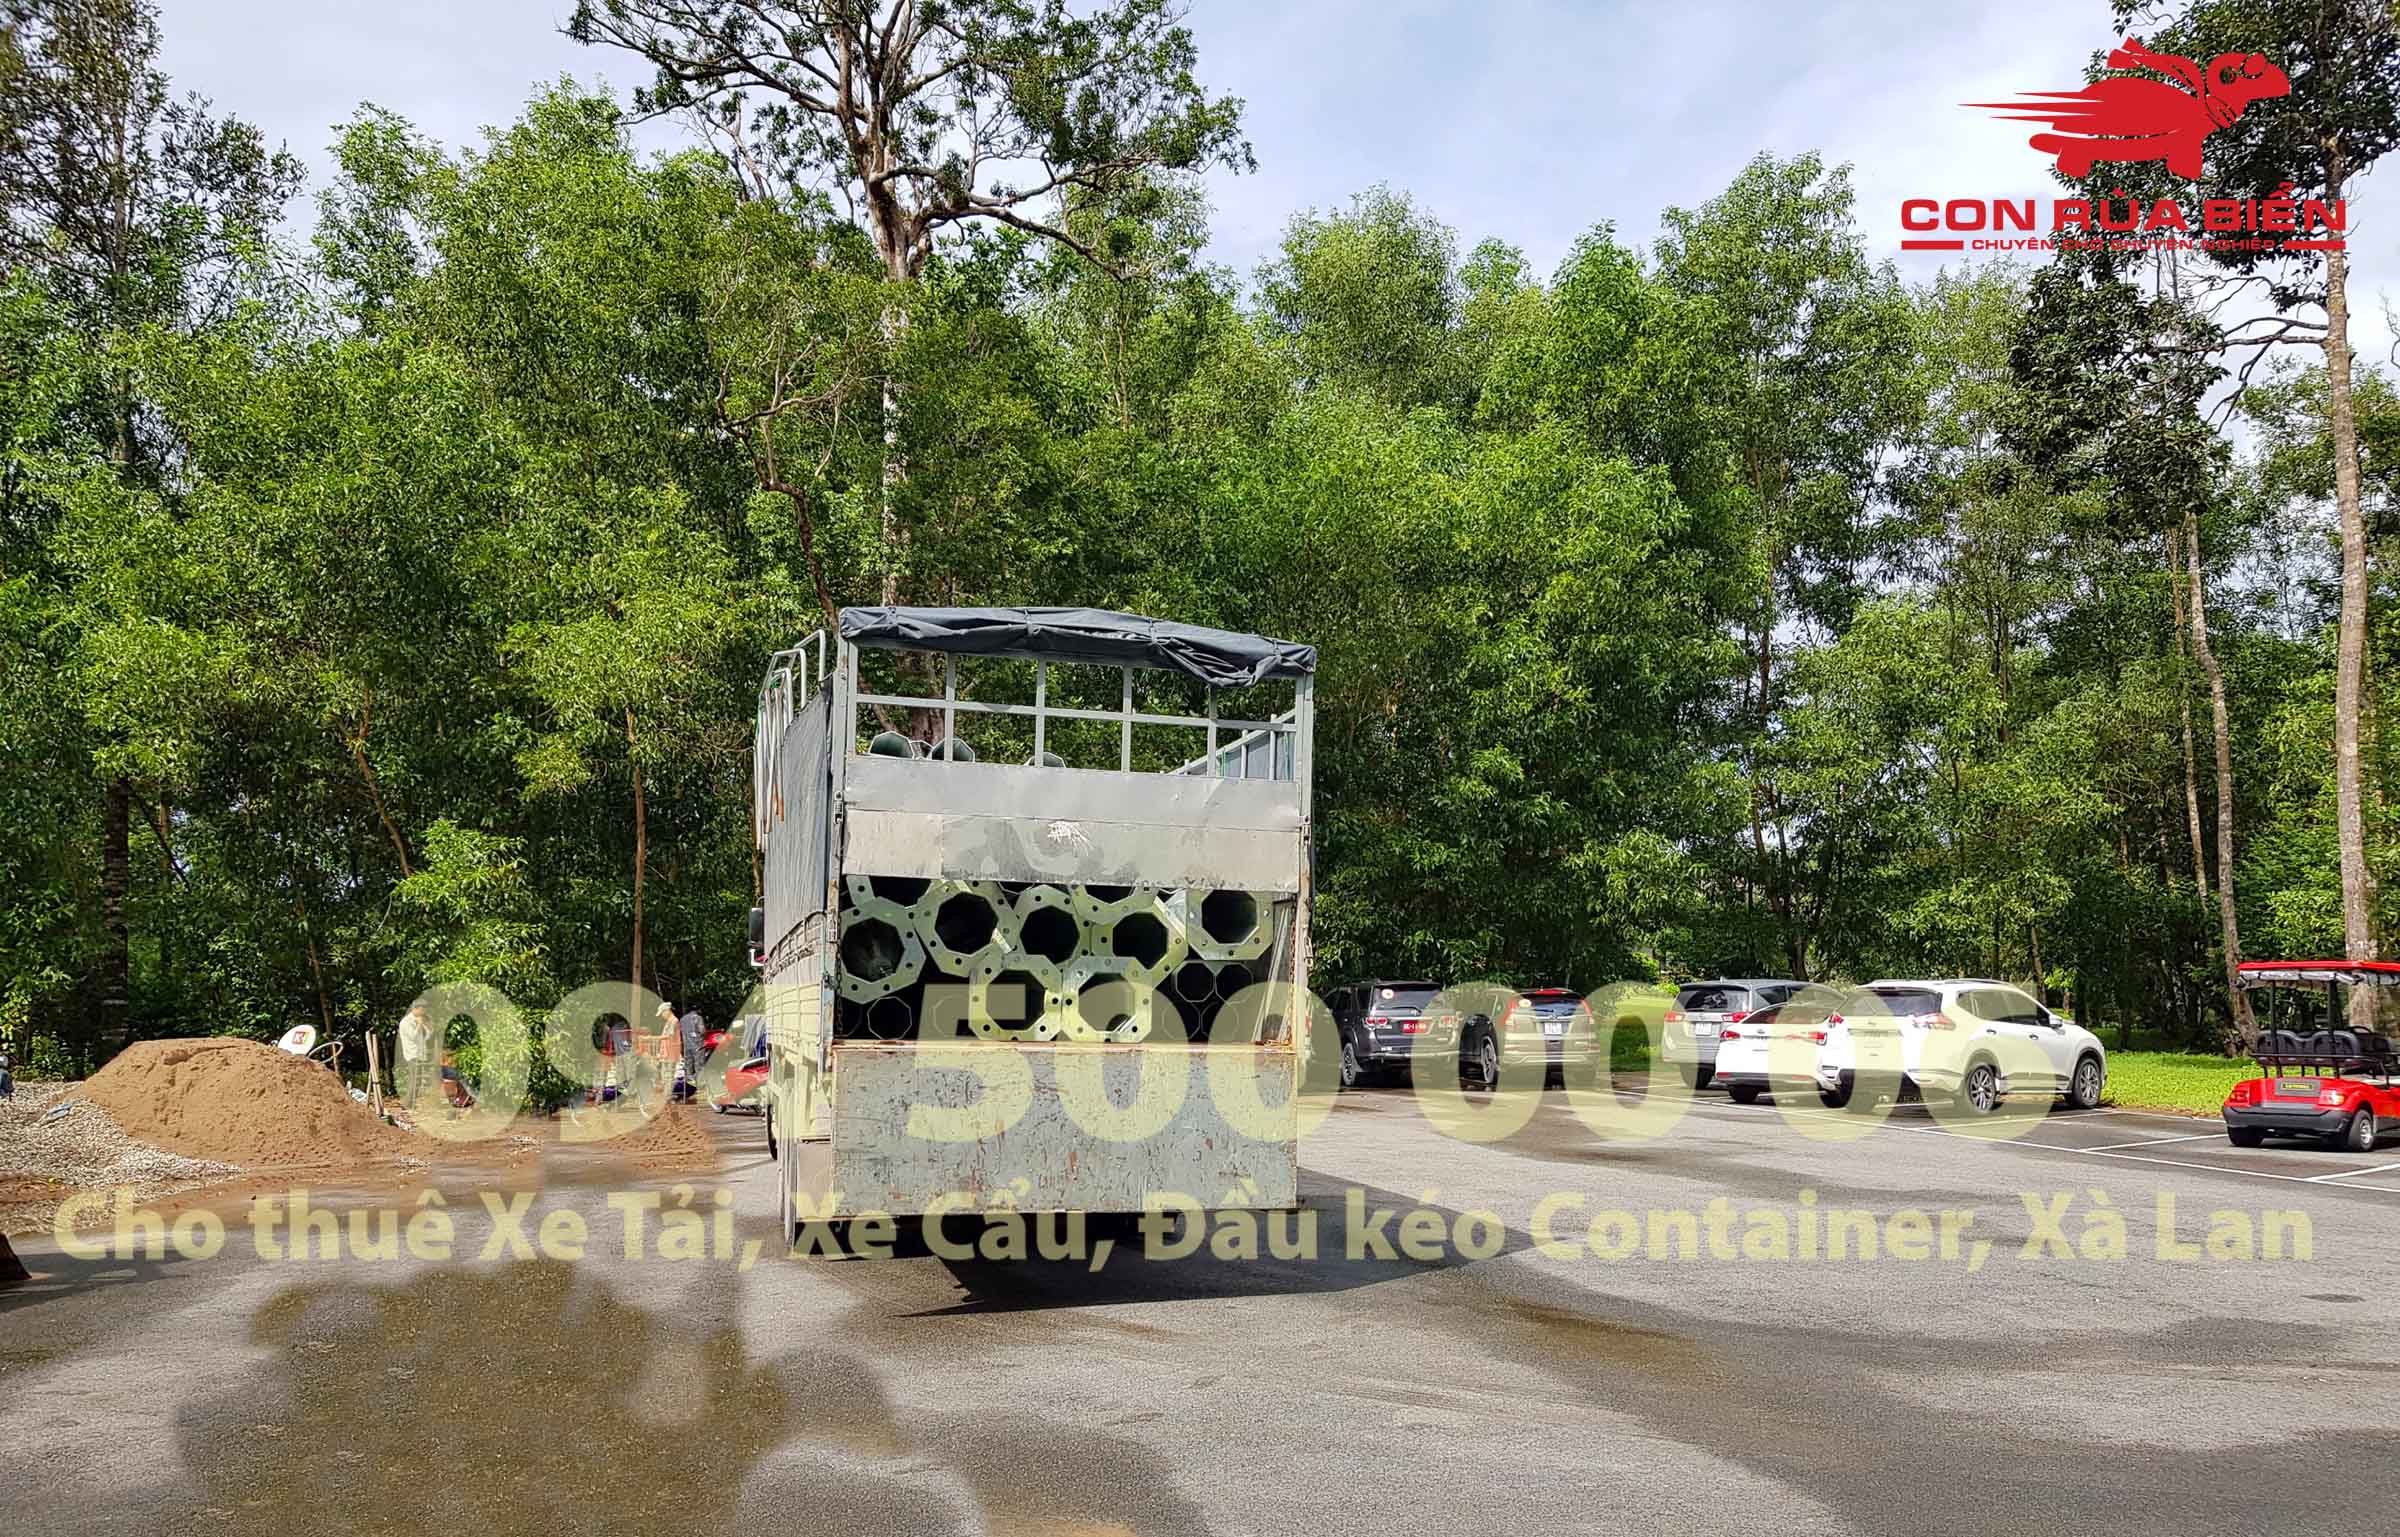 Chành xe Phú Quốc - Con Rùa Biển là nhà xe vận chuyển 2 chiều chuyên tuyến Hà Nội - Sài Gòn - Phú Quốc với dịch vụ Xe tải gửi hàng đi Phú Quốc | 0945000006